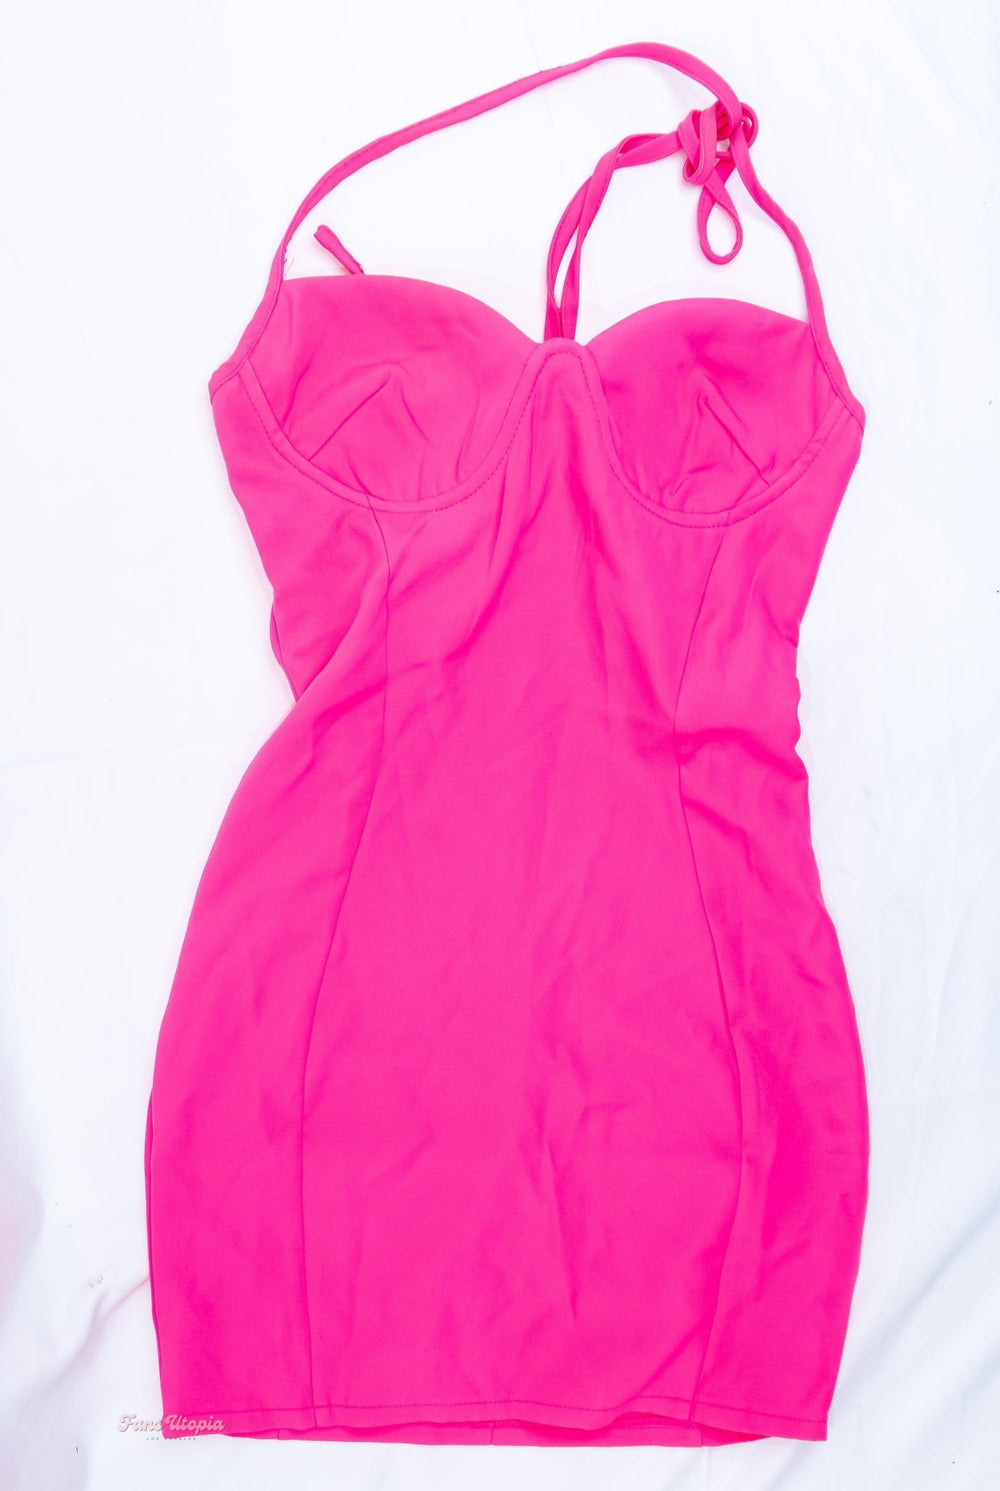 Chanel Camryn Pink Dress - FANS UTOPIA